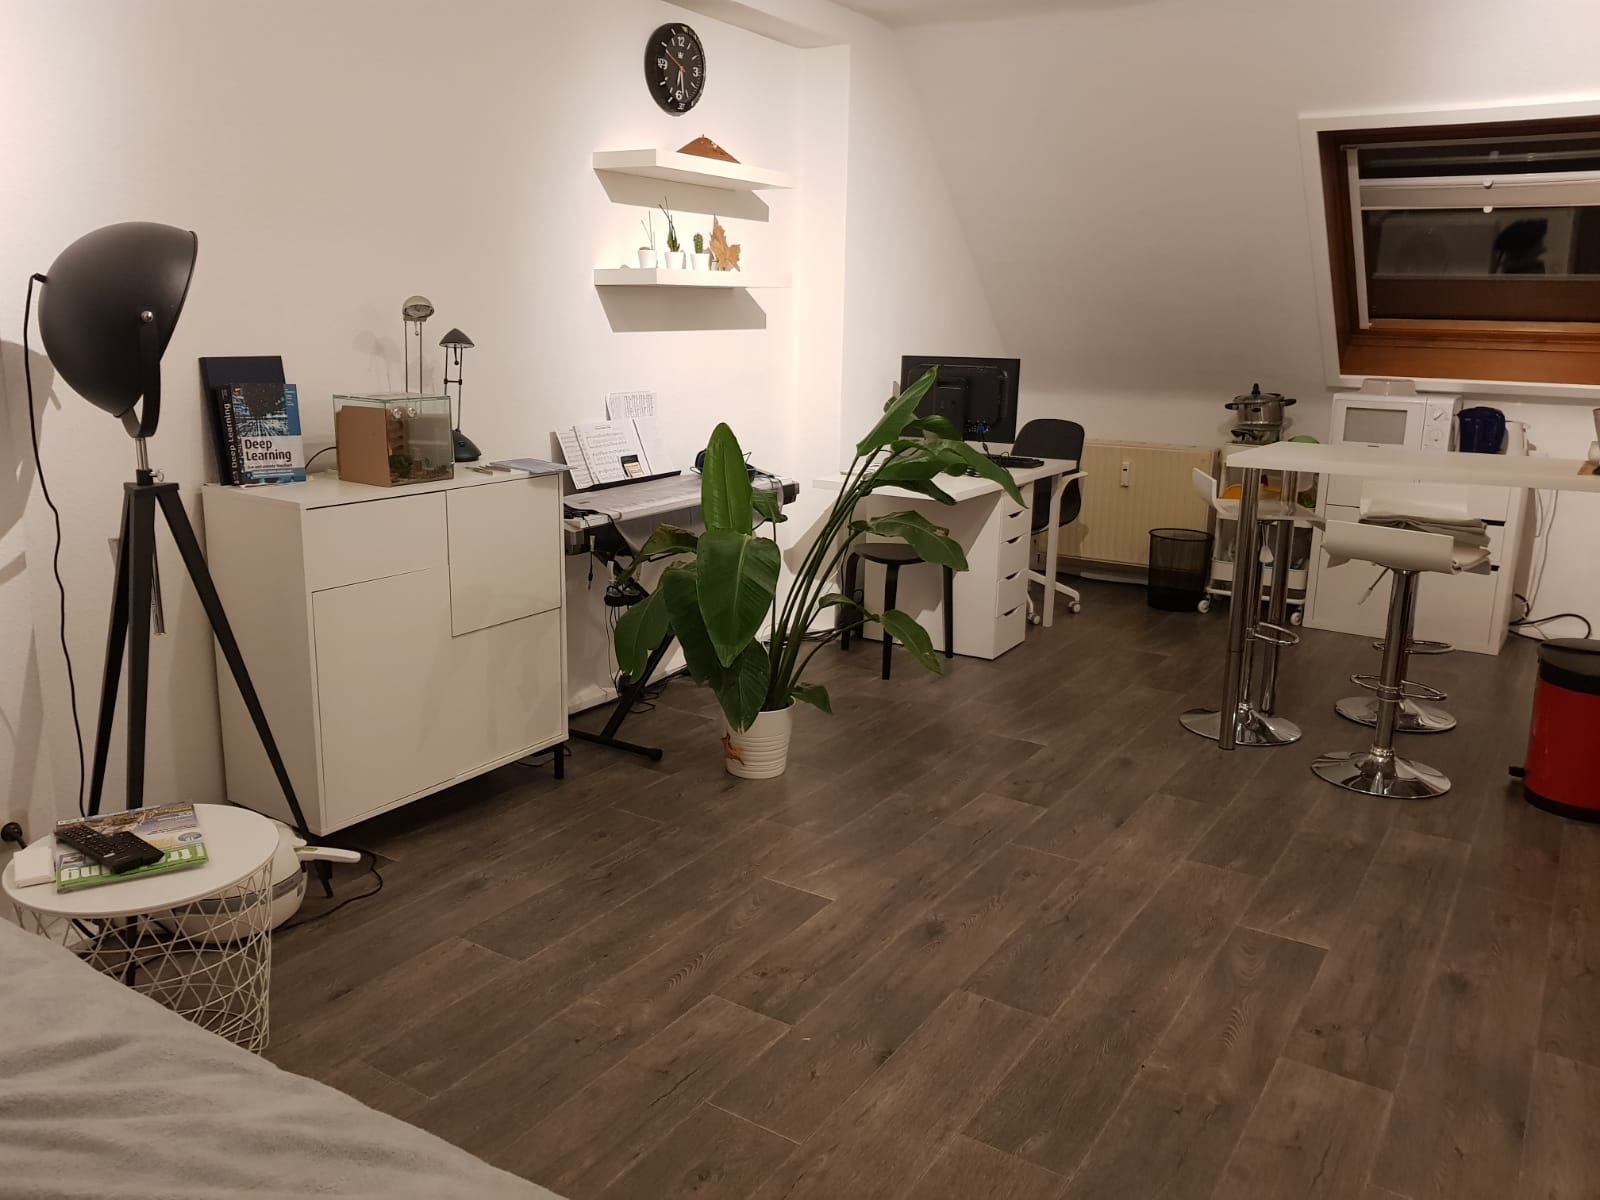 MA-Neckarau: Appartement mit kleiner Küche im Dachgeschoss sucht Studenten